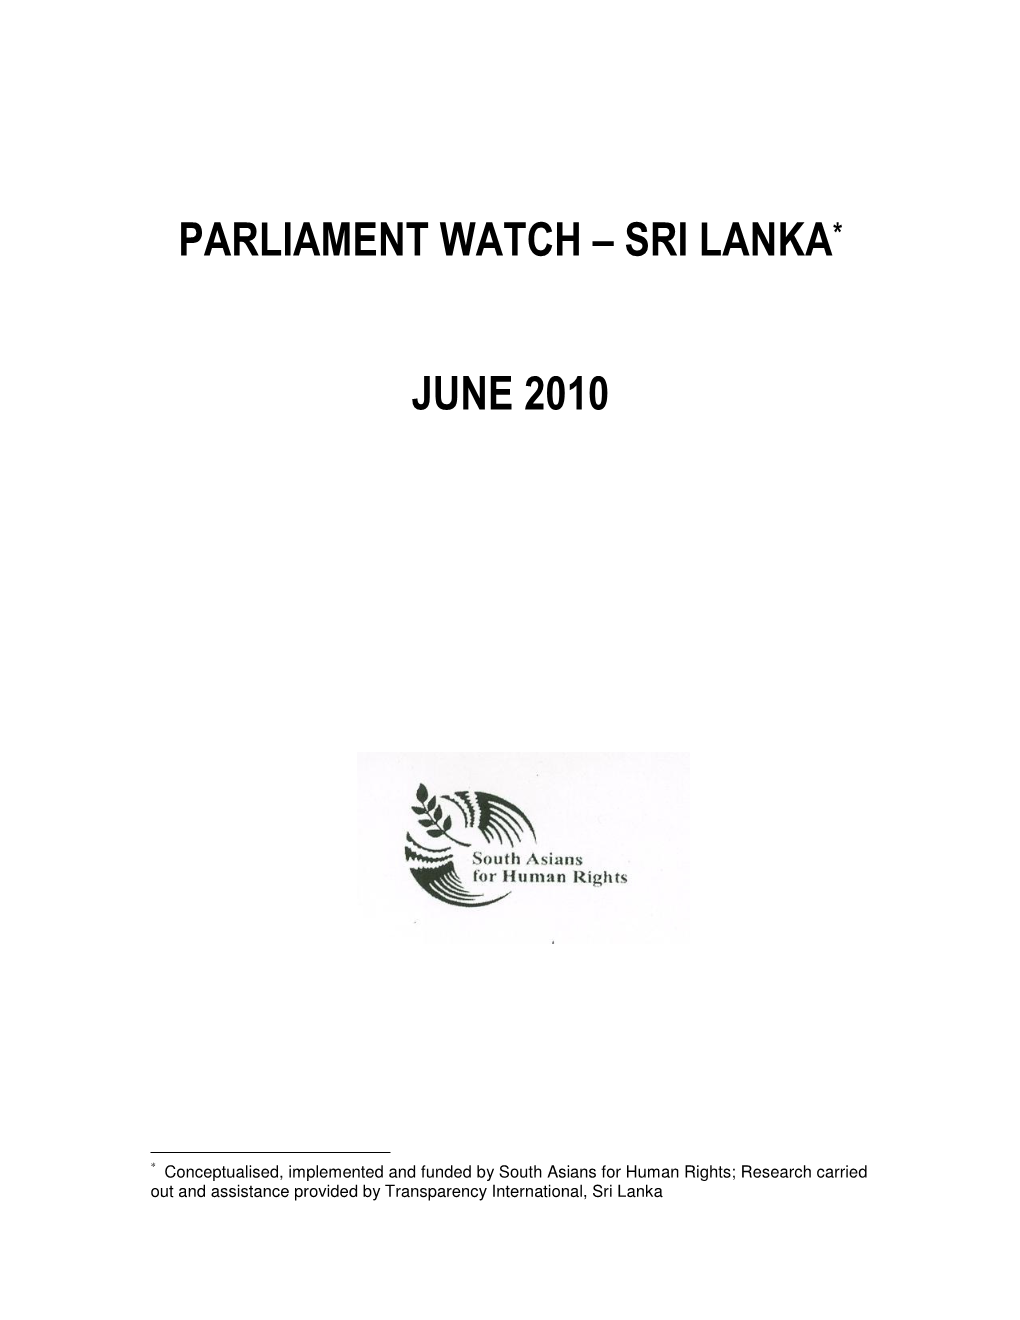 Parliament Watch – Sri Lanka *